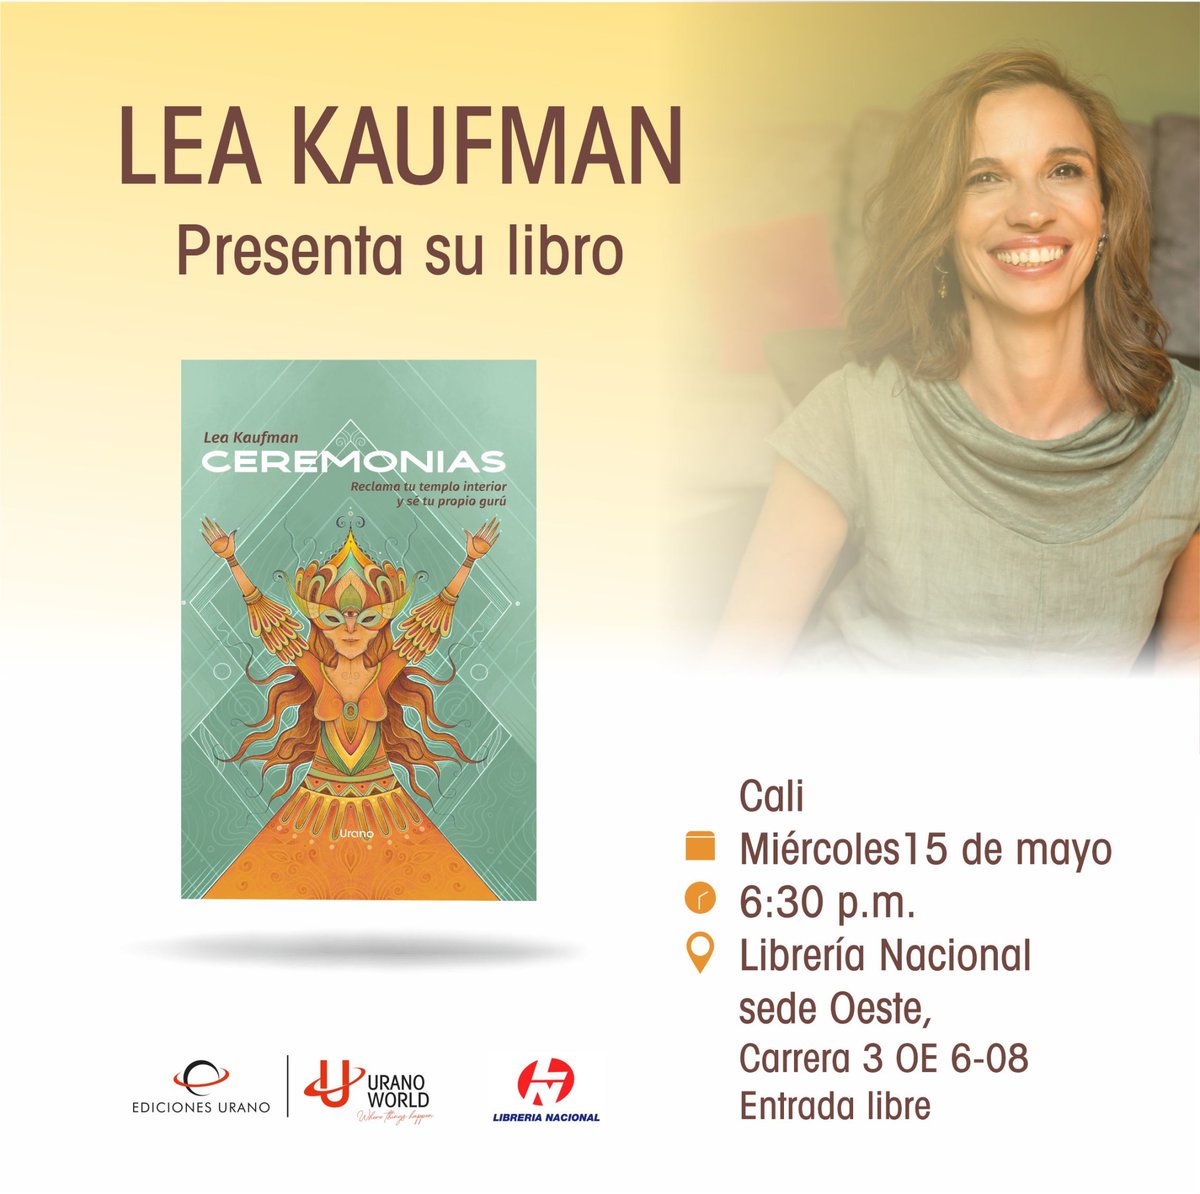 ¡No te pierdas la presentación de Cᴇʀᴇᴍᴏɴɪᴀs de Lea Kaufman este miércoles! 📚✨ Acompáñanos en una tarde especial junto a la autora.